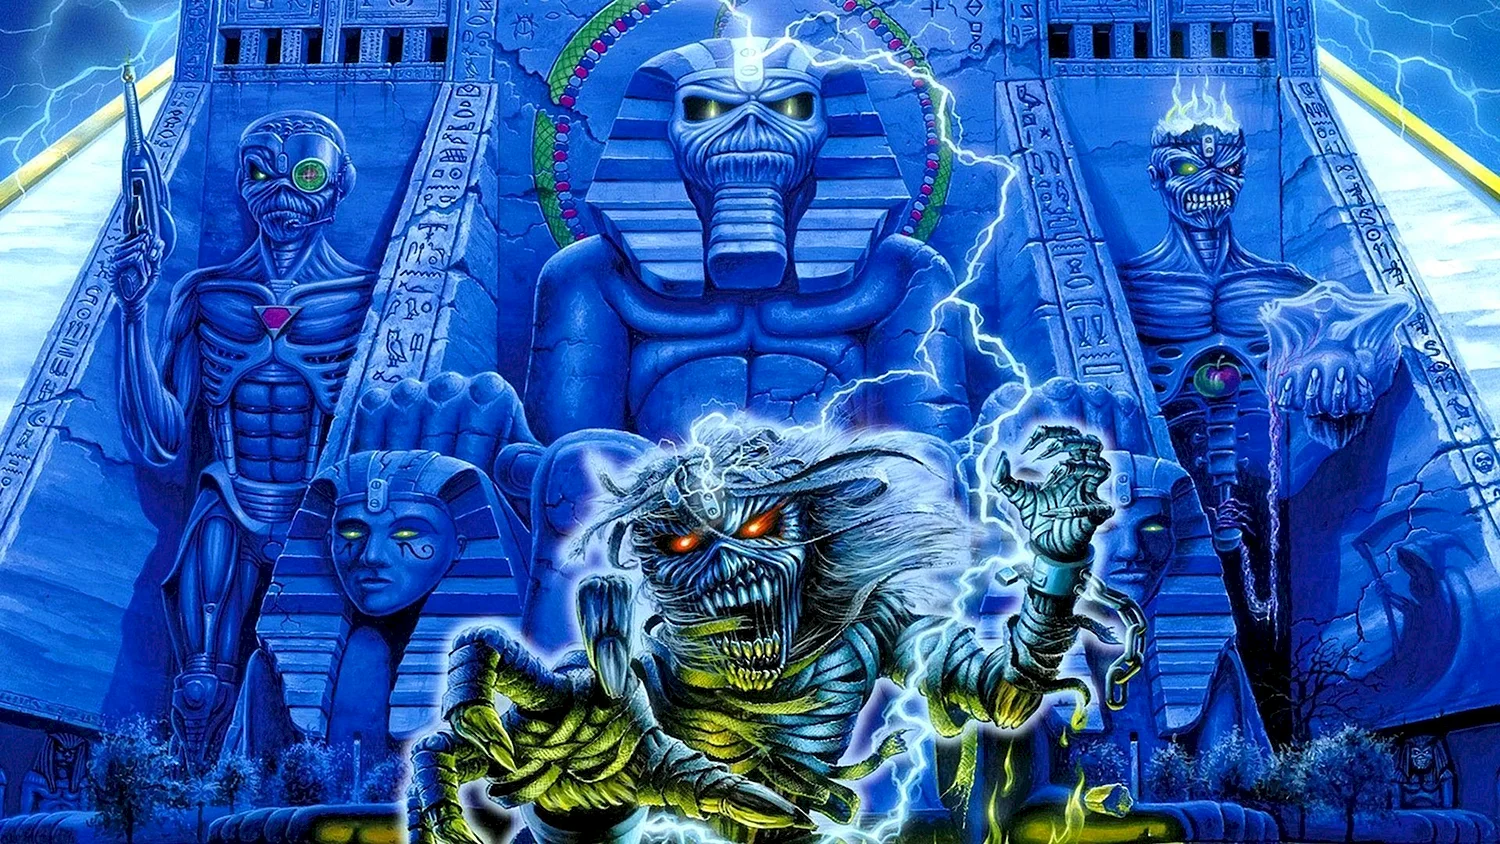 Iron Maiden Powerslave 1984